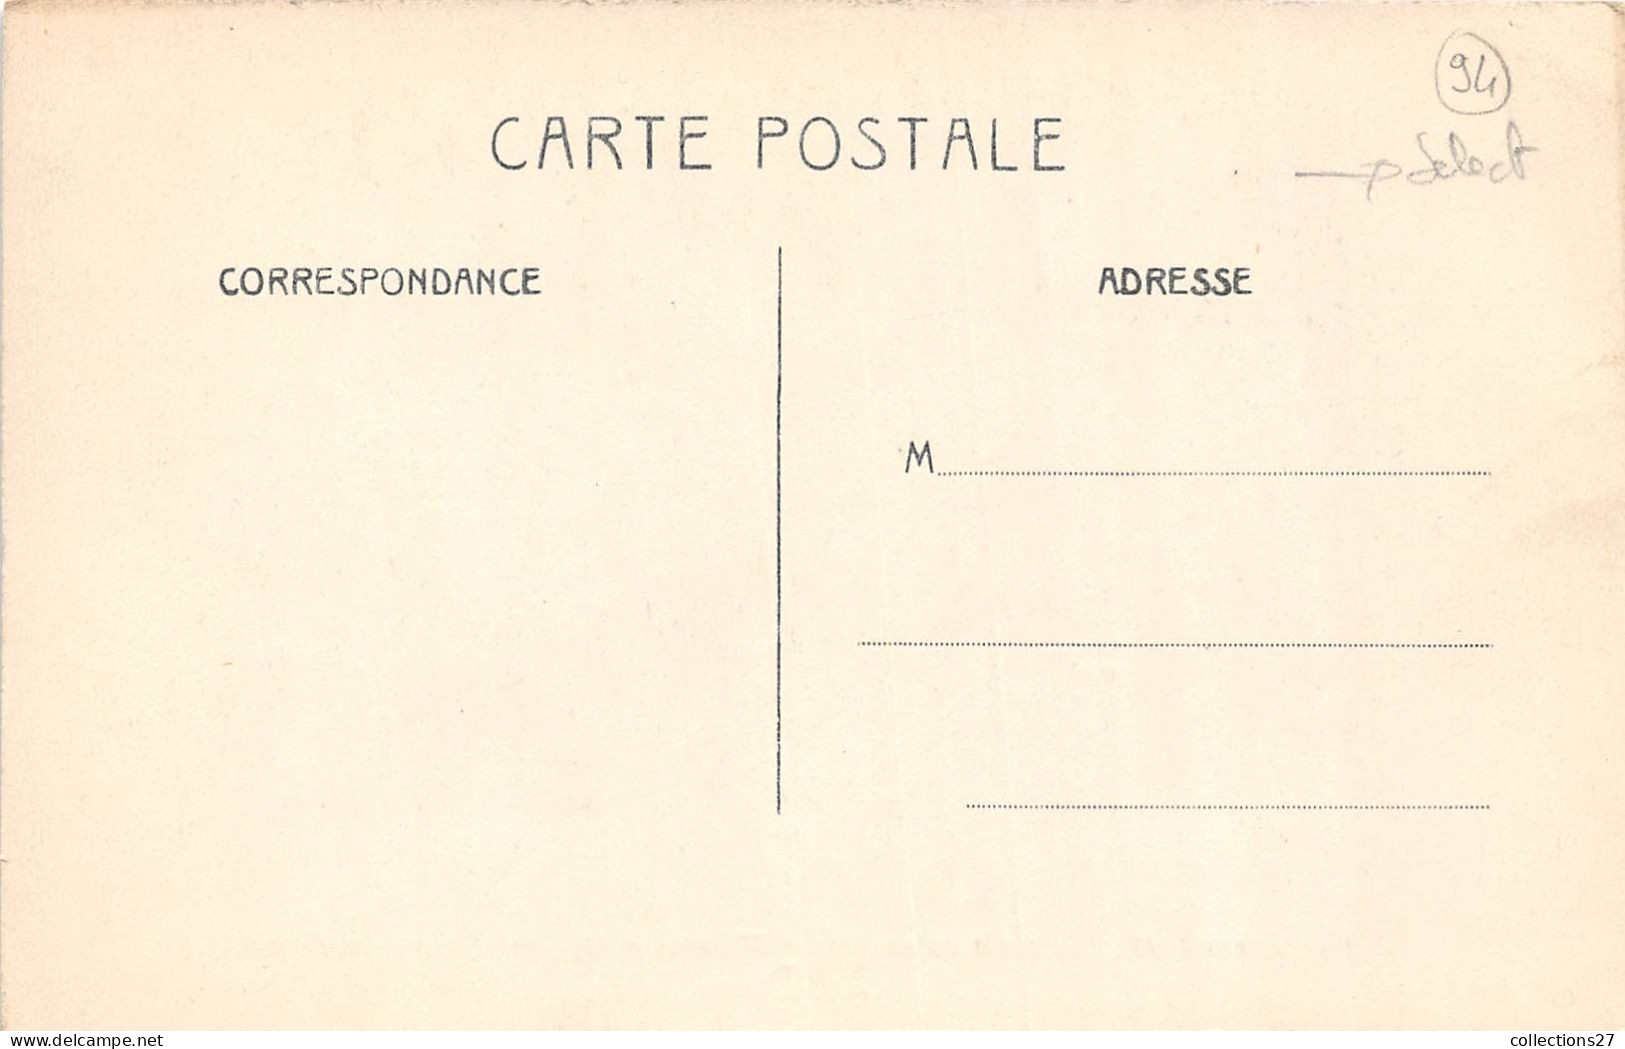 94-IVRY-PORT- INONDATION 1910- LE POSTE DE SECOURS LE 27 JANVIER 16 QUAI D'IVRY PORT - Ivry Sur Seine